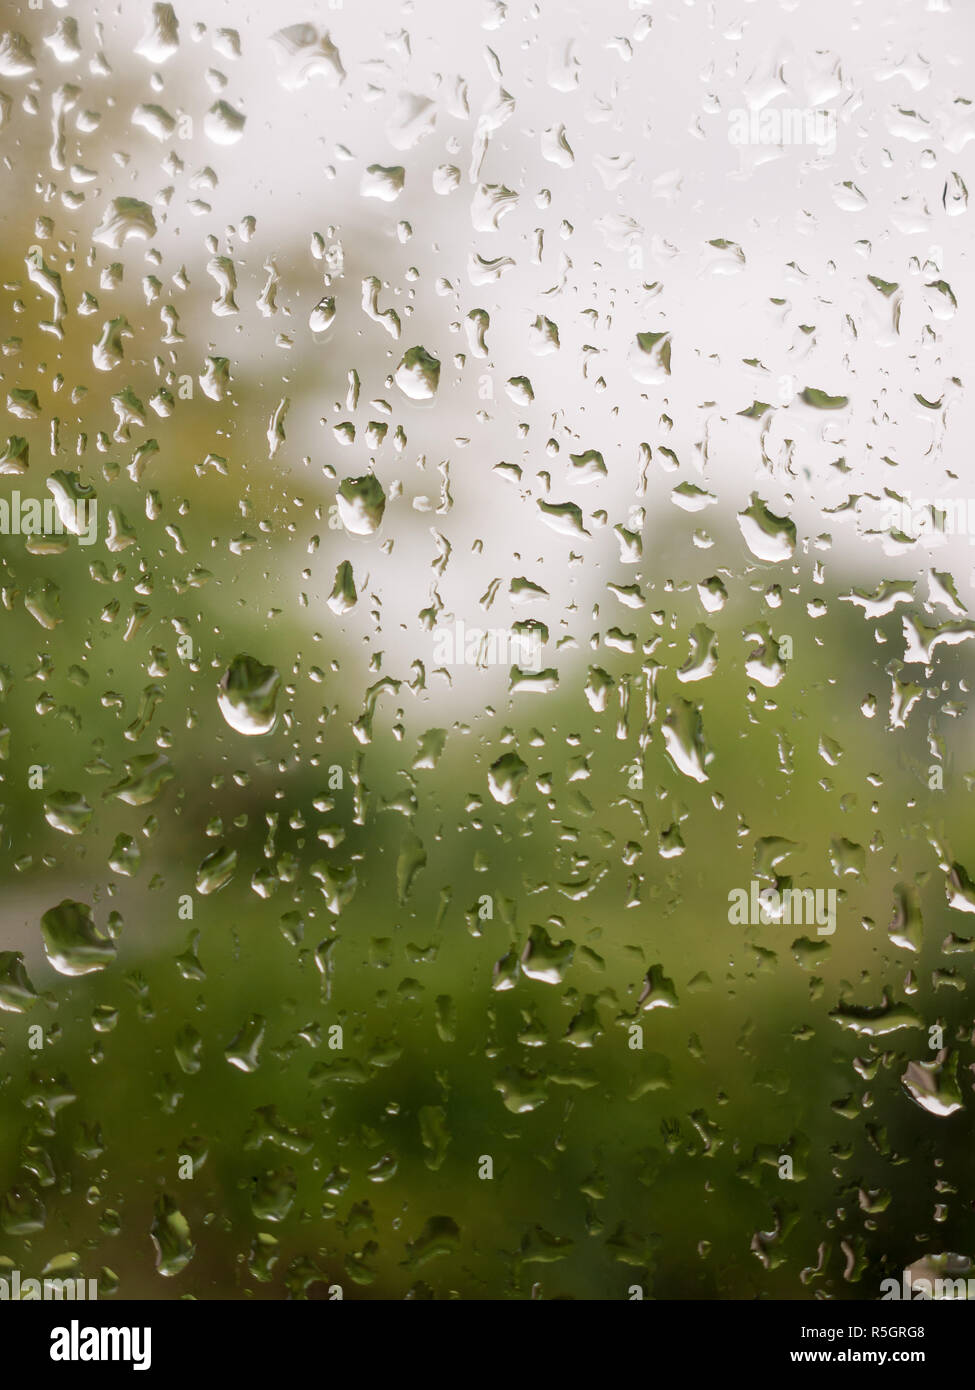 rain drops on glass door to garden Stock Photo - Alamy